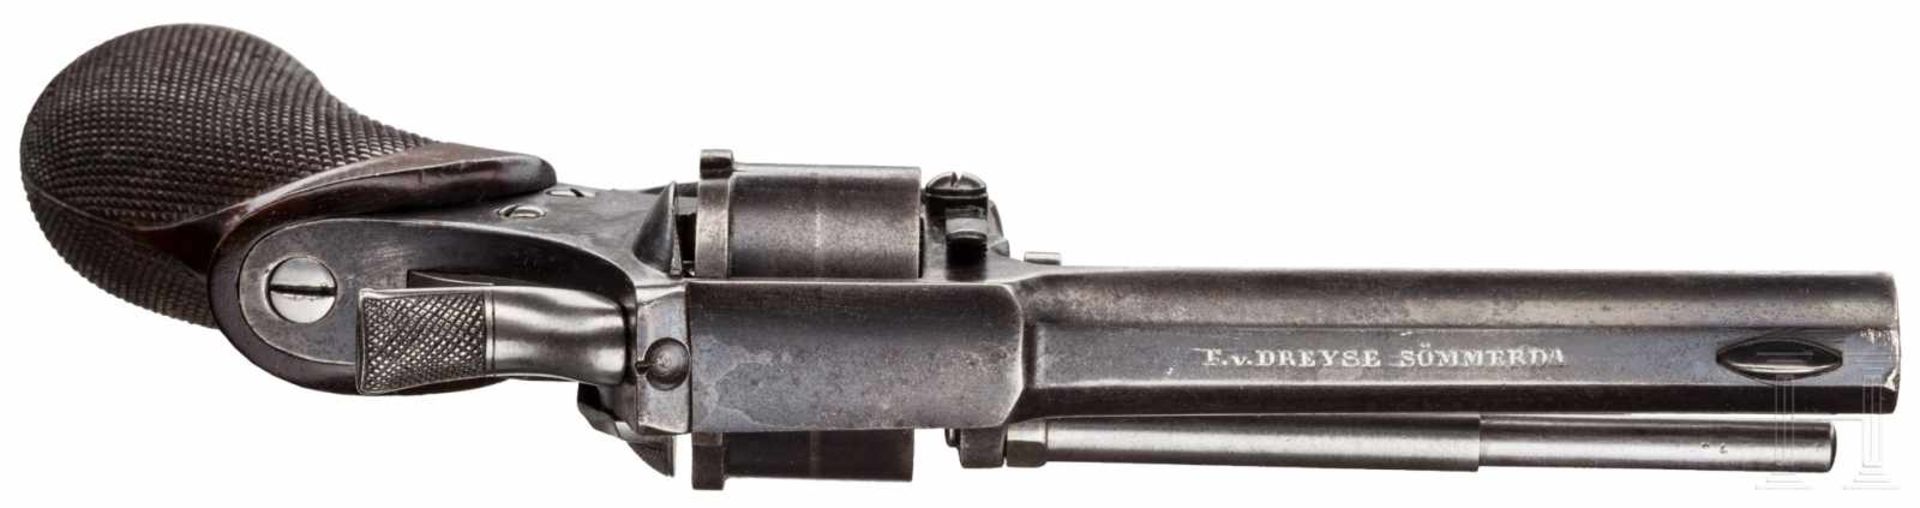 Unbekannter Revolver F.v. Dreyse, Sömmerda, Prototyp oder Versuch, um 1880Kal. 9,5 mm, Nr. 18474, - Bild 3 aus 3